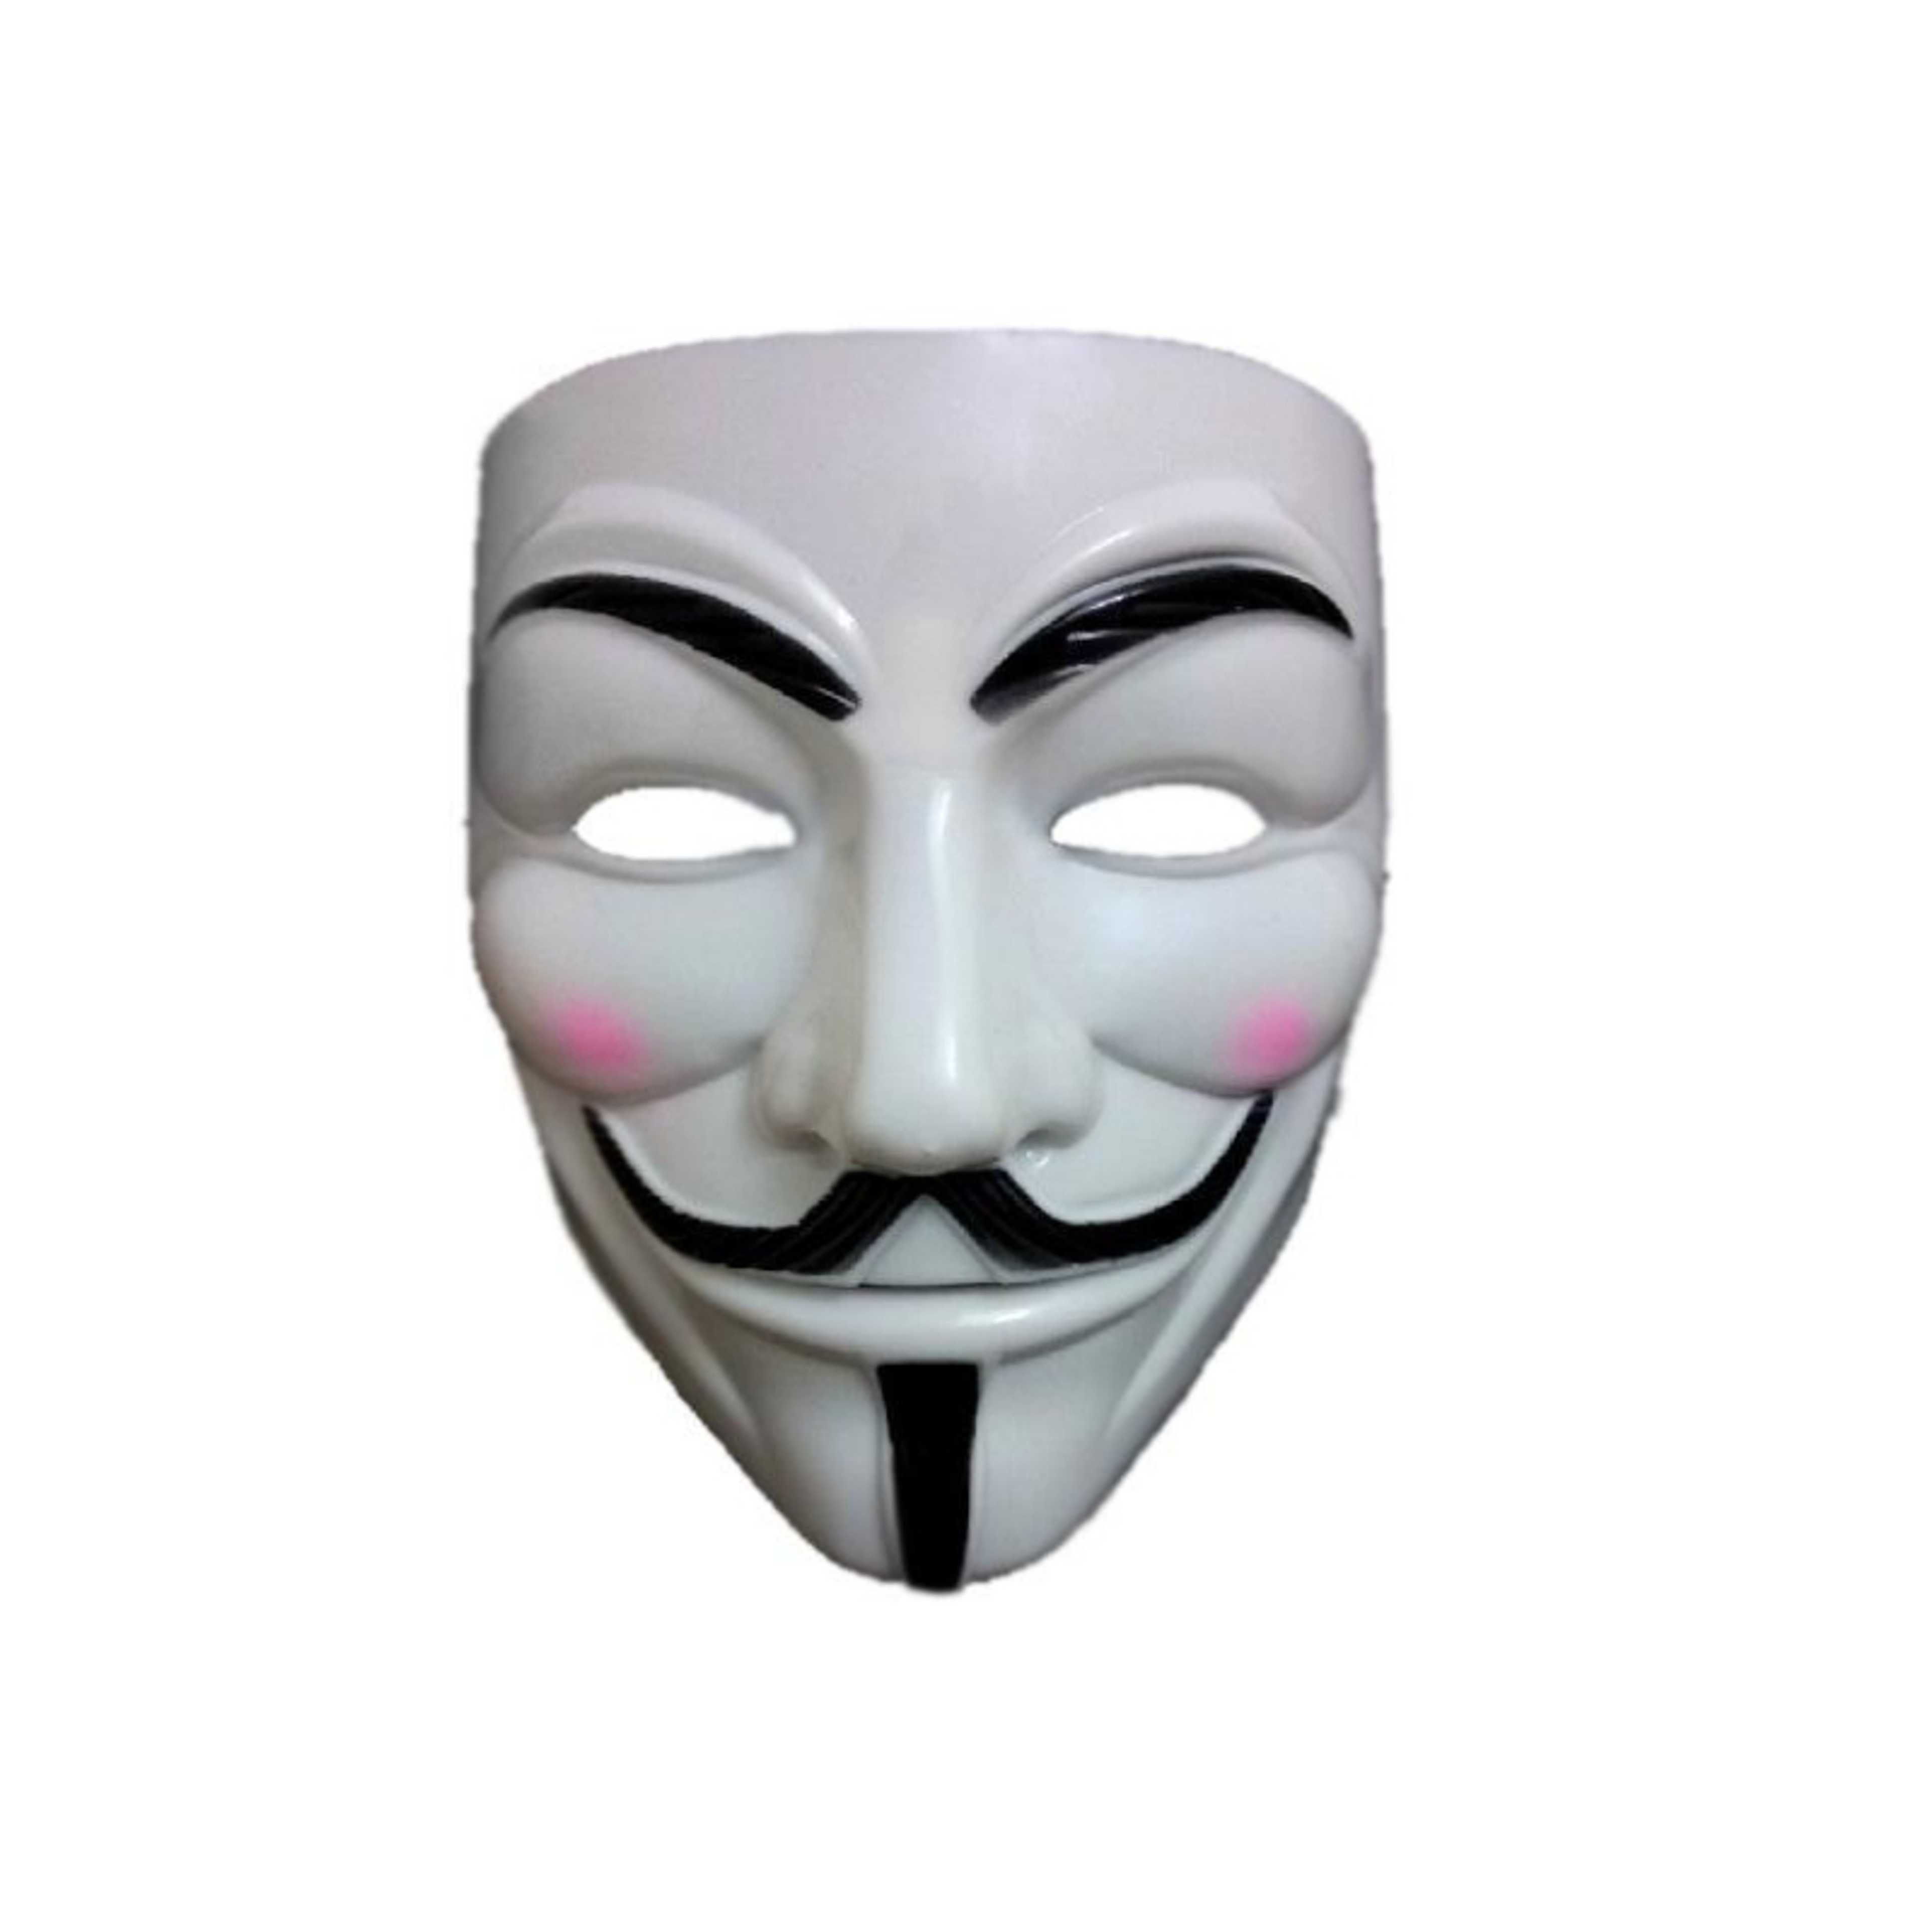 V is for Vendetta Guy Fawkes Mask - White (New)